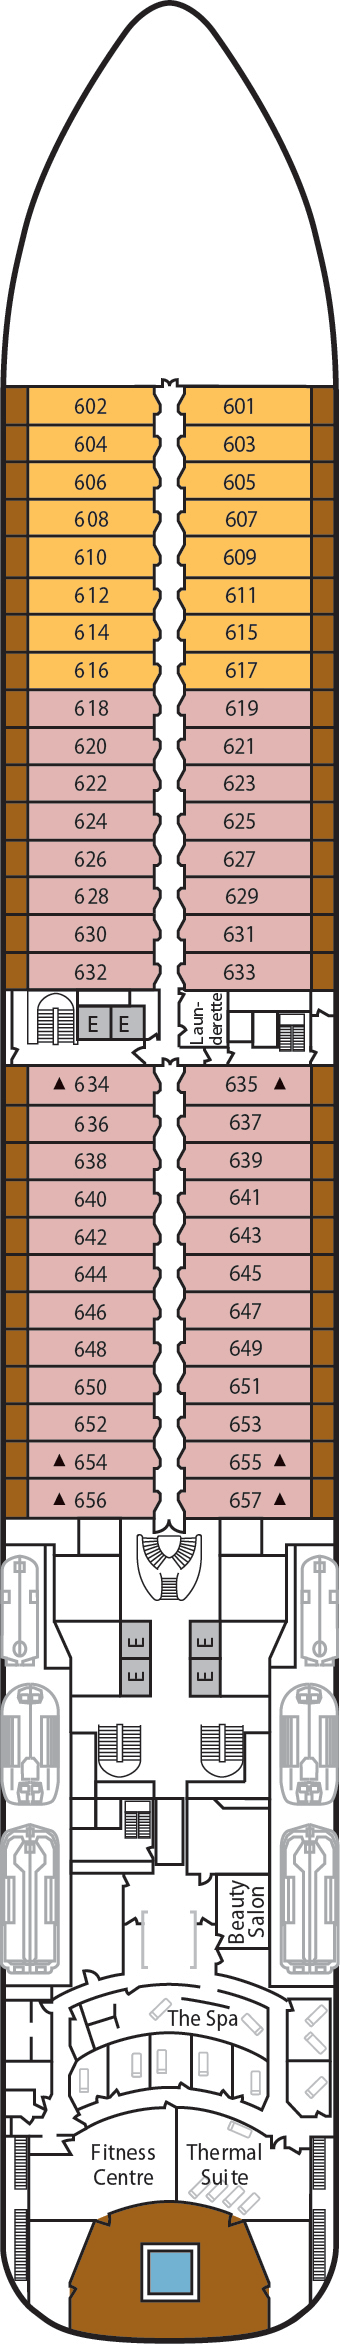 Deck 6 Deck Plan